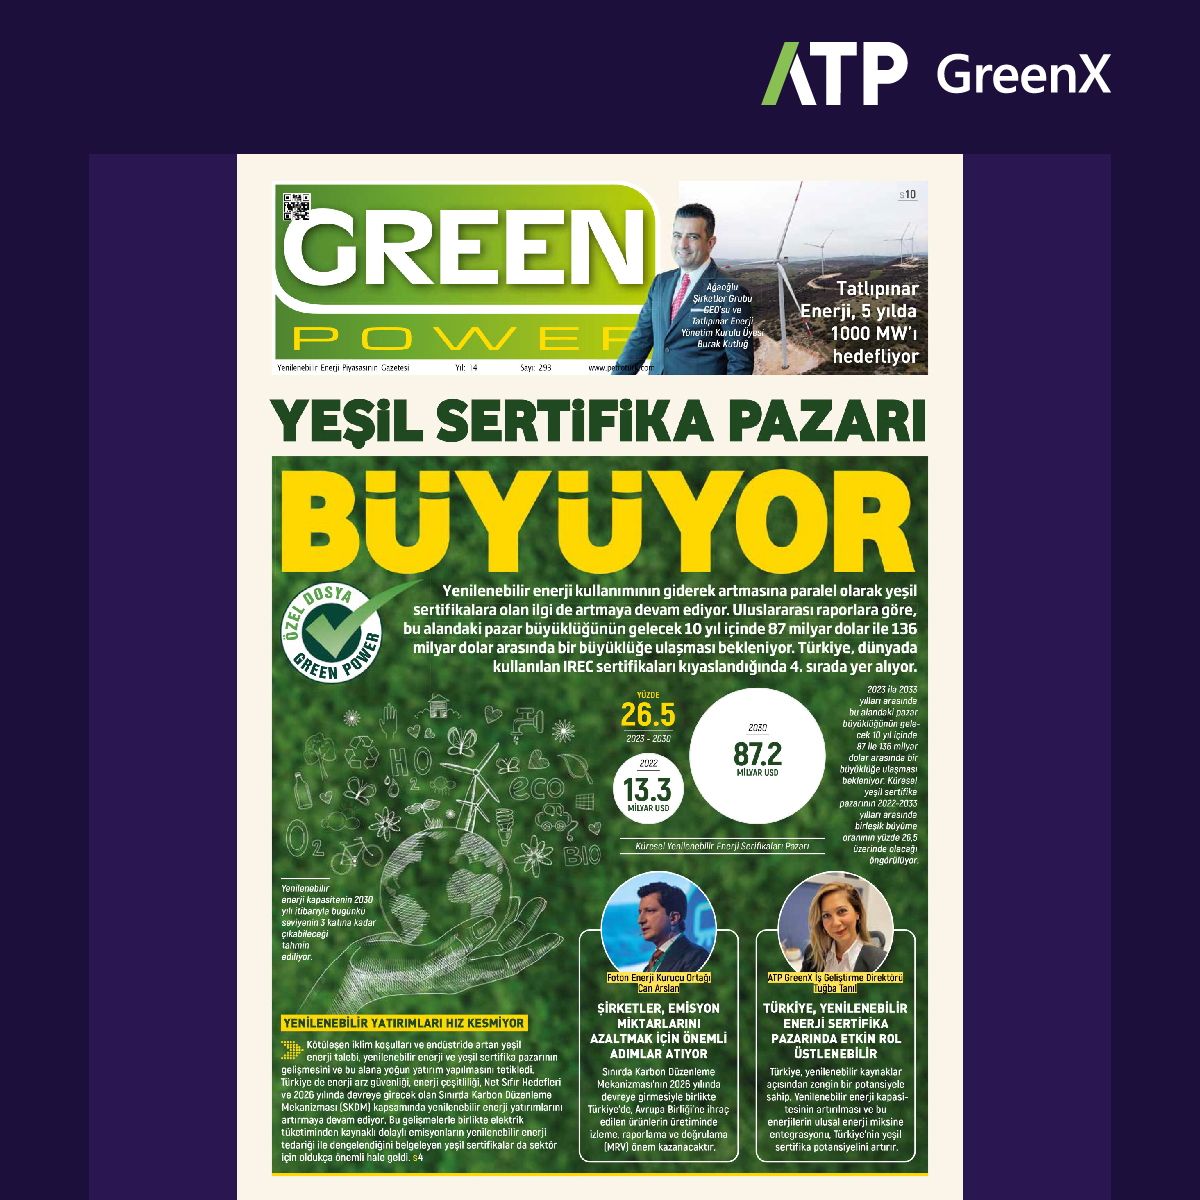 Yenilenebilir enerji piyasasındaki gelişmeleri aktaran GreenPower Dergisi’nde, GreenX markamızla yer aldık!

#ATP #ATATP #ATPGreenX #YenilenebilirEnerji #KarbonSertifikaları #Sürdürülebilirlik #YeşilEnerji
#Greenpower #Petrotürk